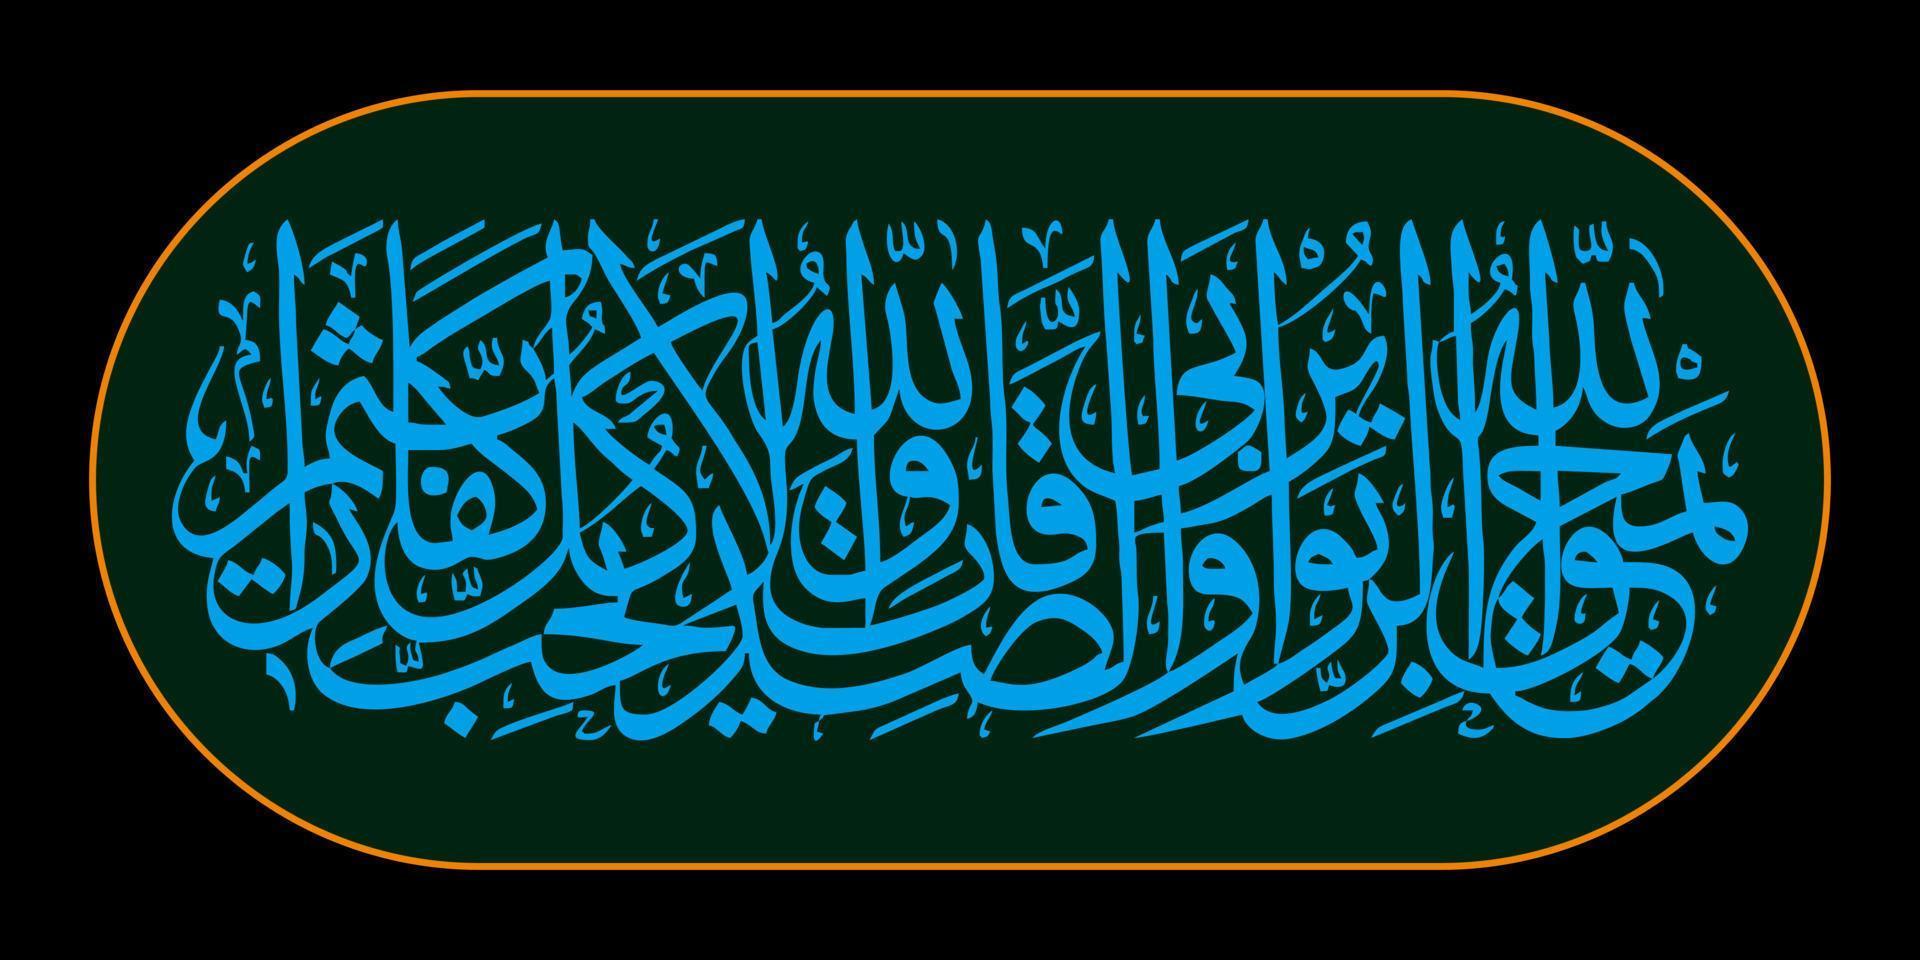 caligrafía árabe quran surah al baqarah verso 276, traducción allah destruye la usura y nutre las limosnas. a allah no le gustan todos los que permanecen en la incredulidad y se revuelcan en el pecado. vector